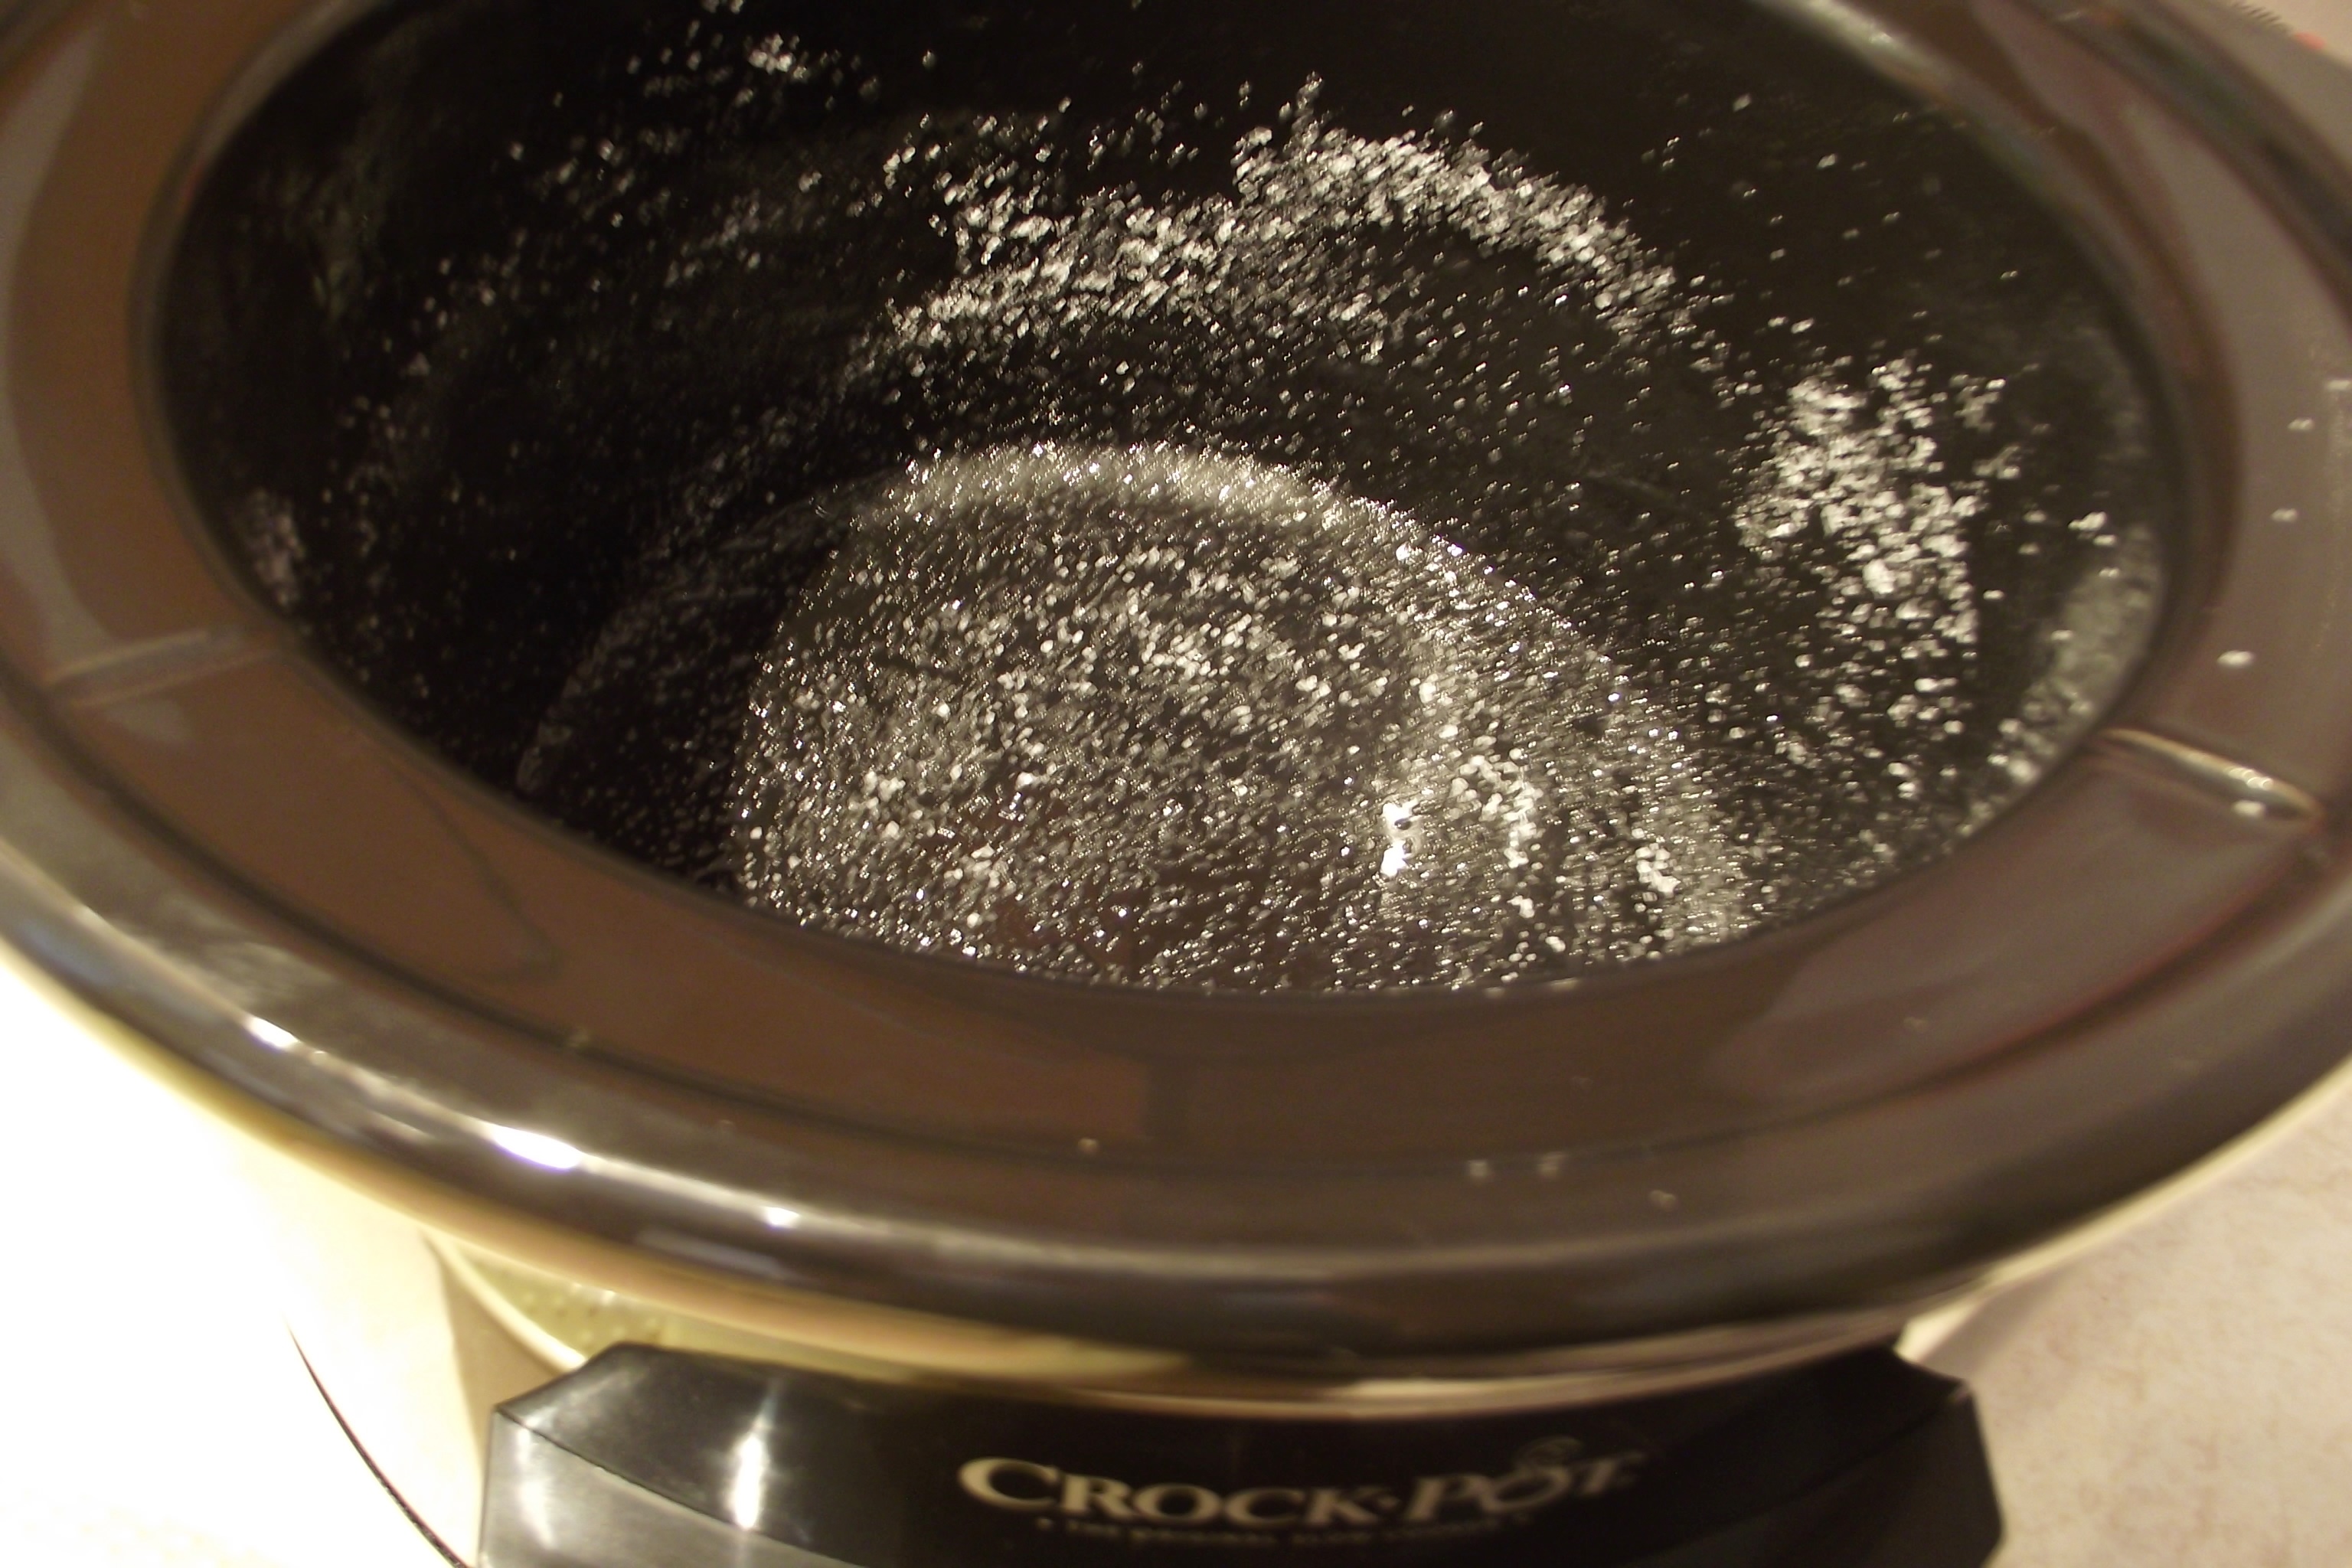 Budinca de mere cu aroma de migdale si scortisoara la slow cooker Crock-Pot 4,7 L